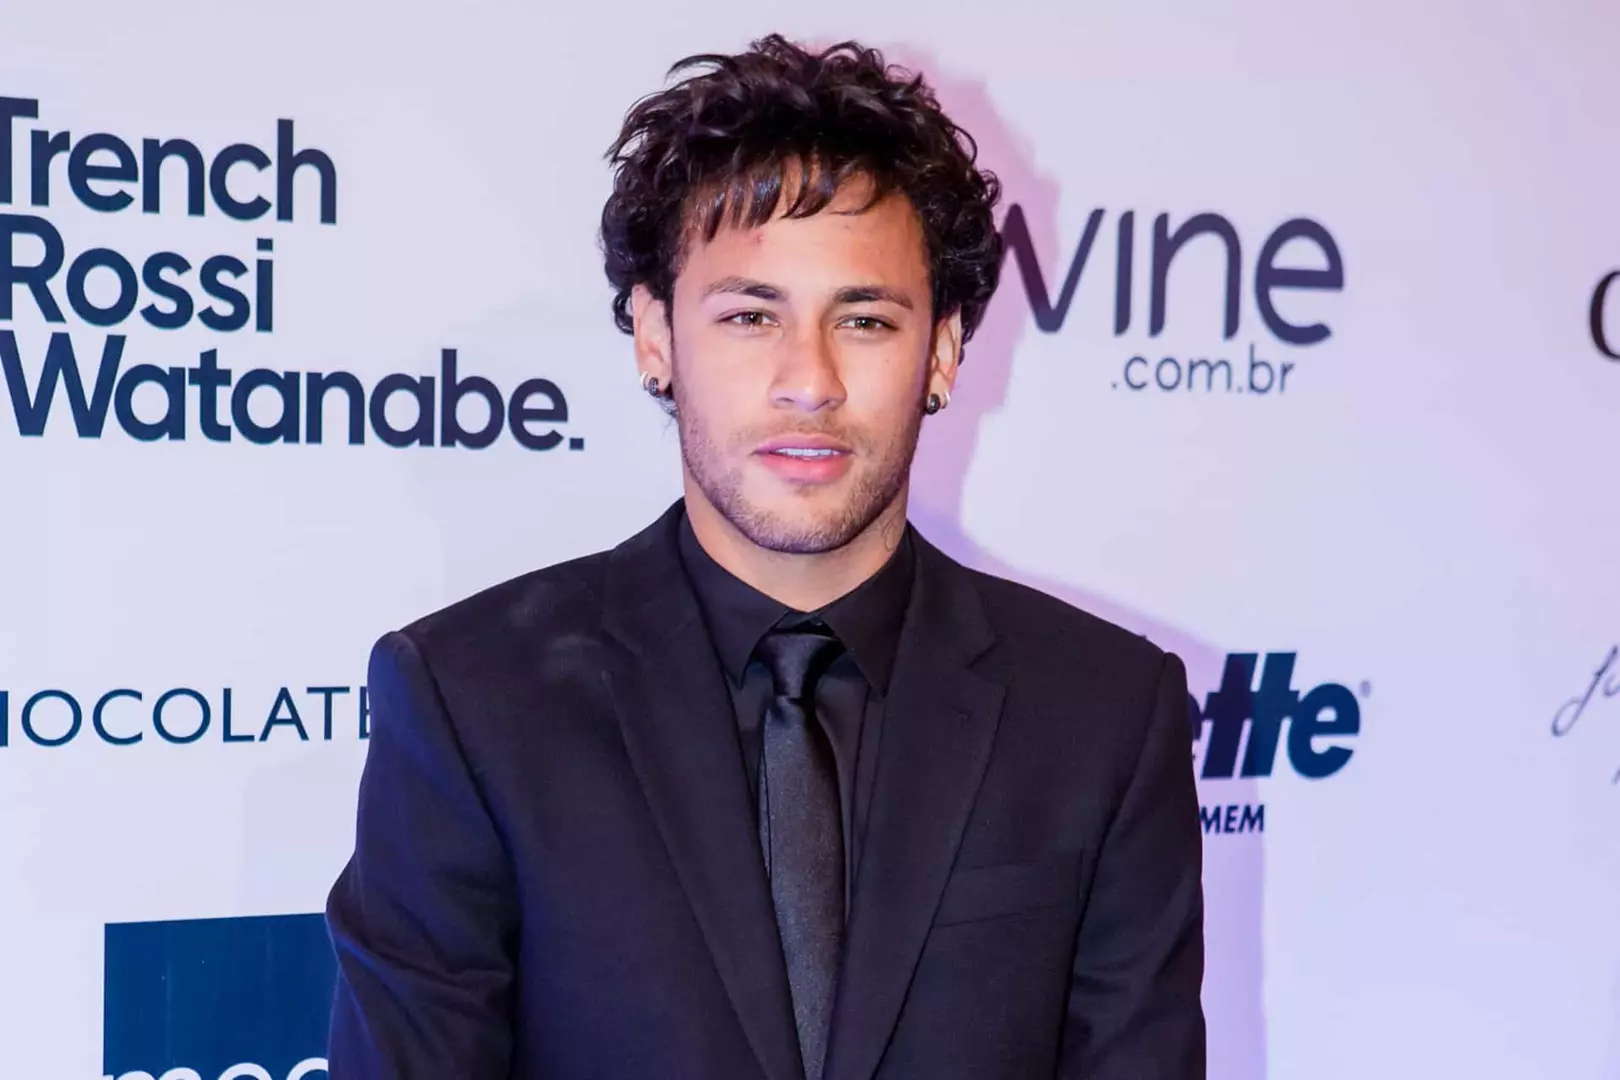 Os penteados mais icônicos de Neymar!